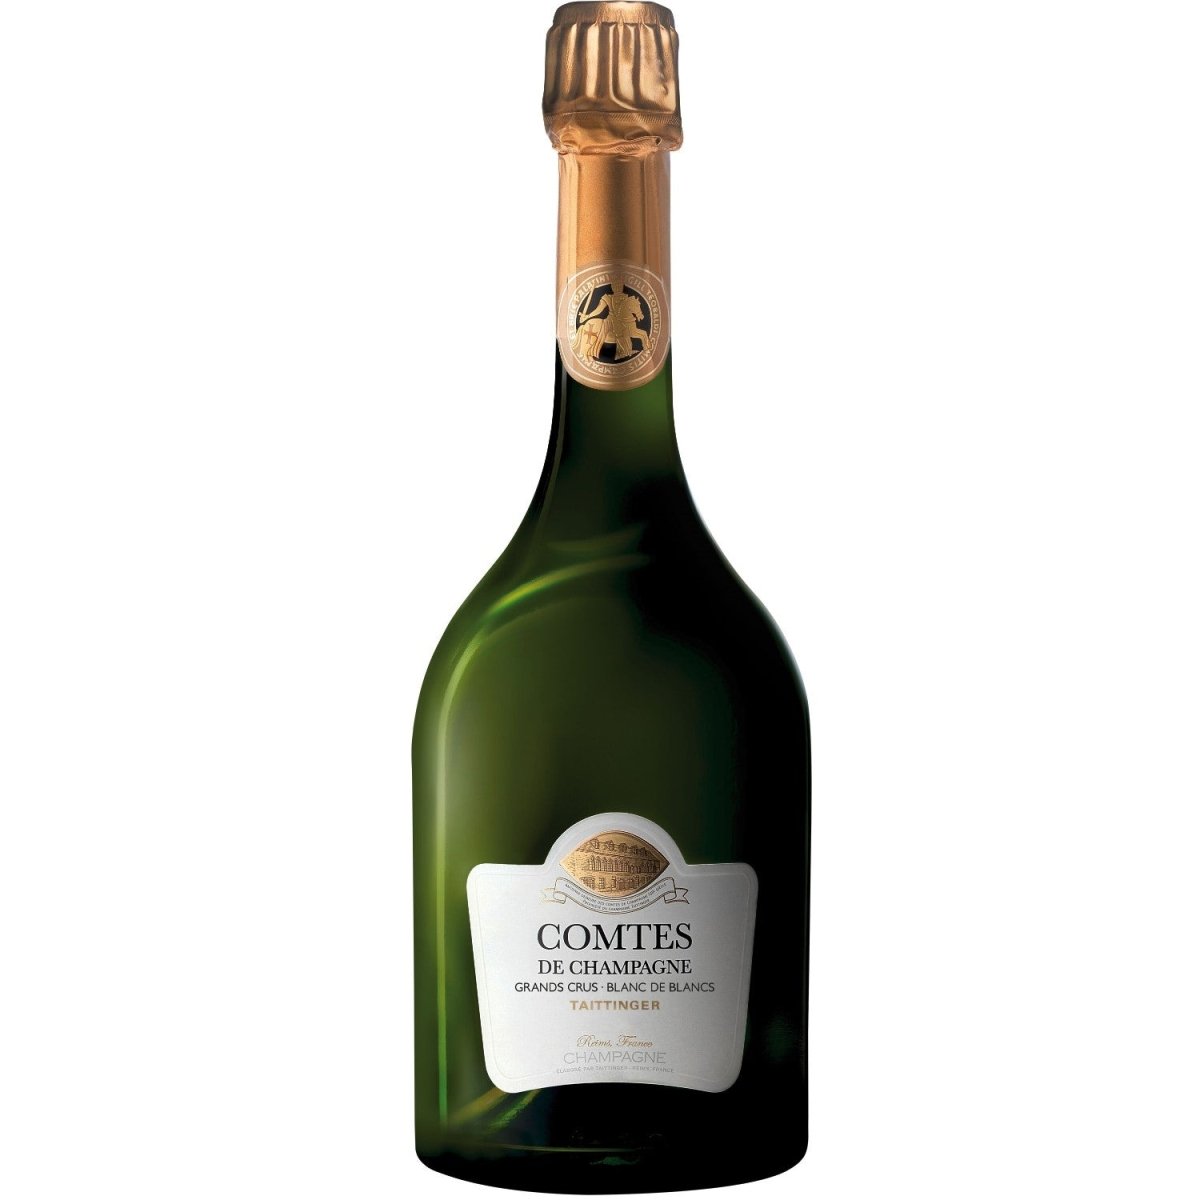 2011 + 2012 + 2013 Champagne Taittinger Comtes de Champagne Blanc de Blancs Champagner Frankreich (3 x 0,75l) - Versanel -